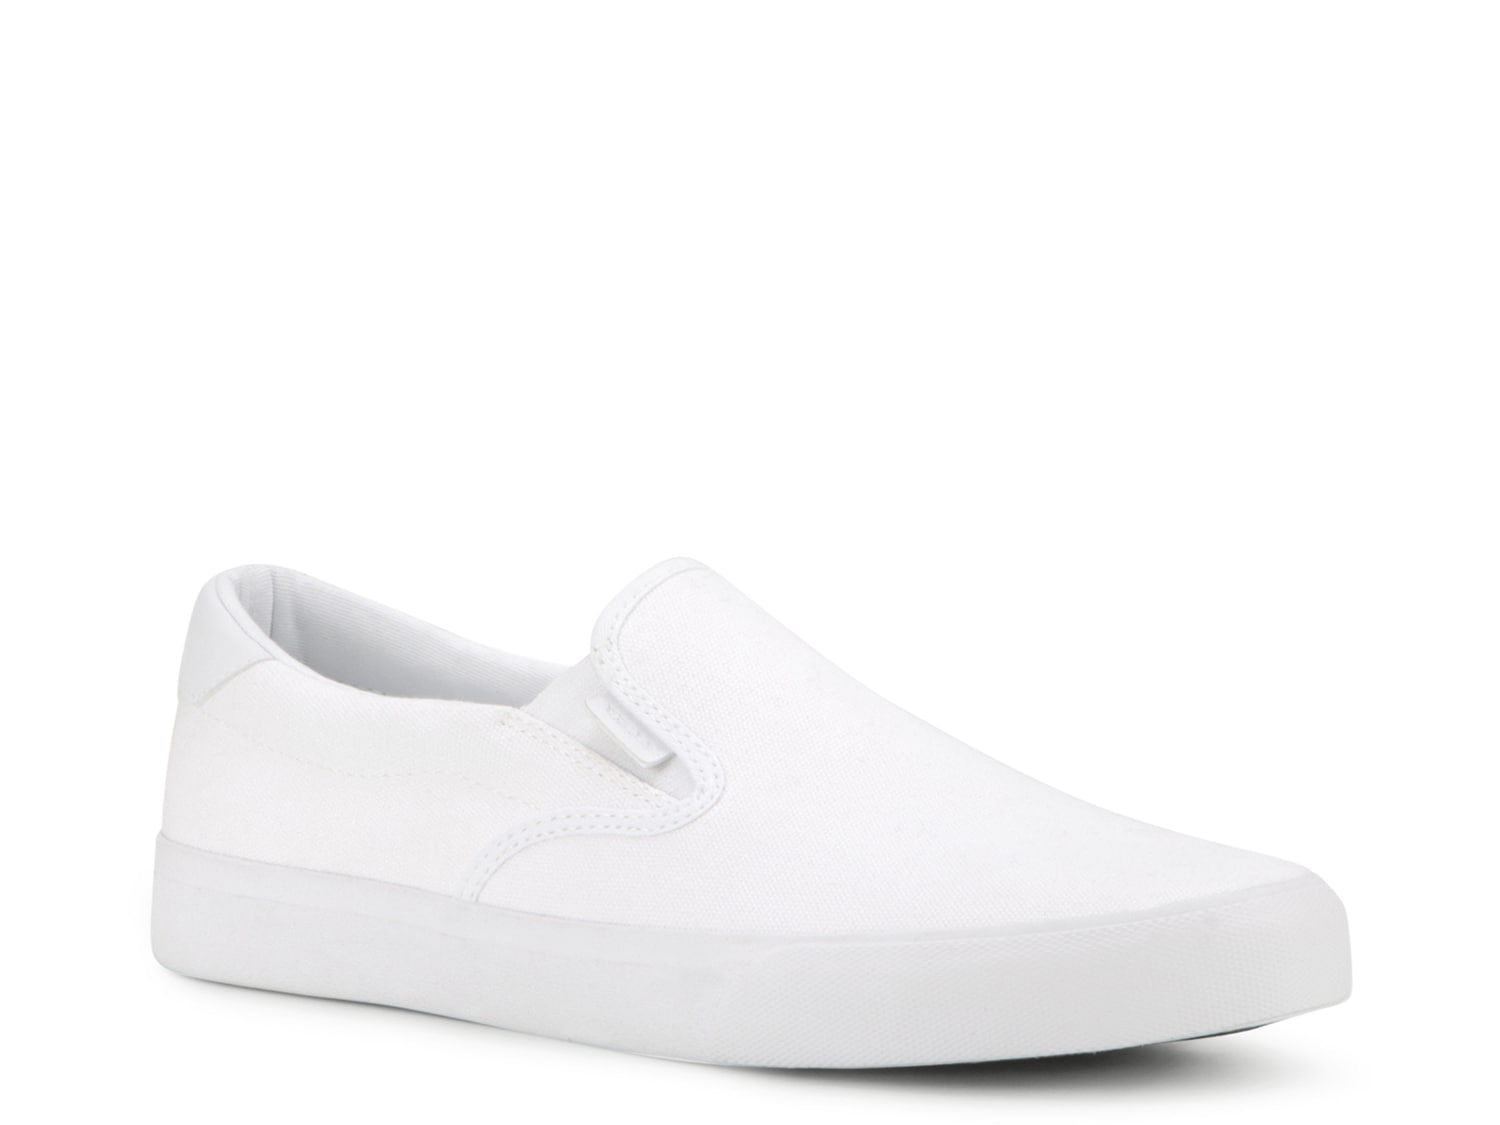 white slip on shoes mens